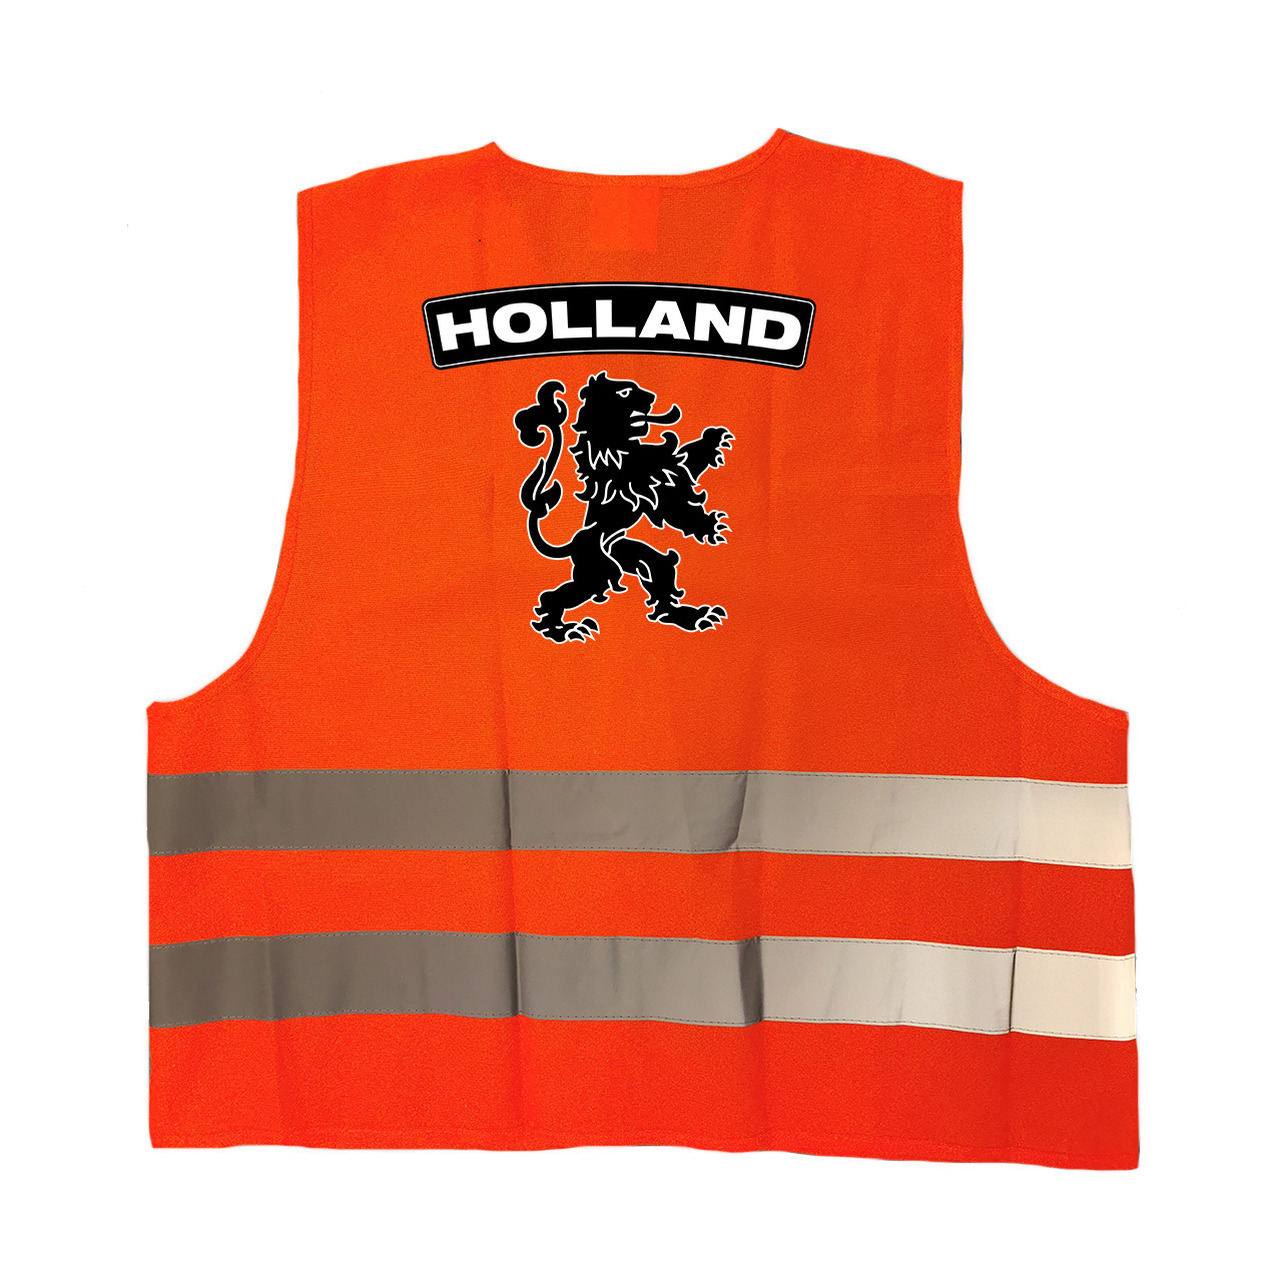 Holland fan hesje met zwarte leeuw EK - WK supporter outfit voor volwassenen